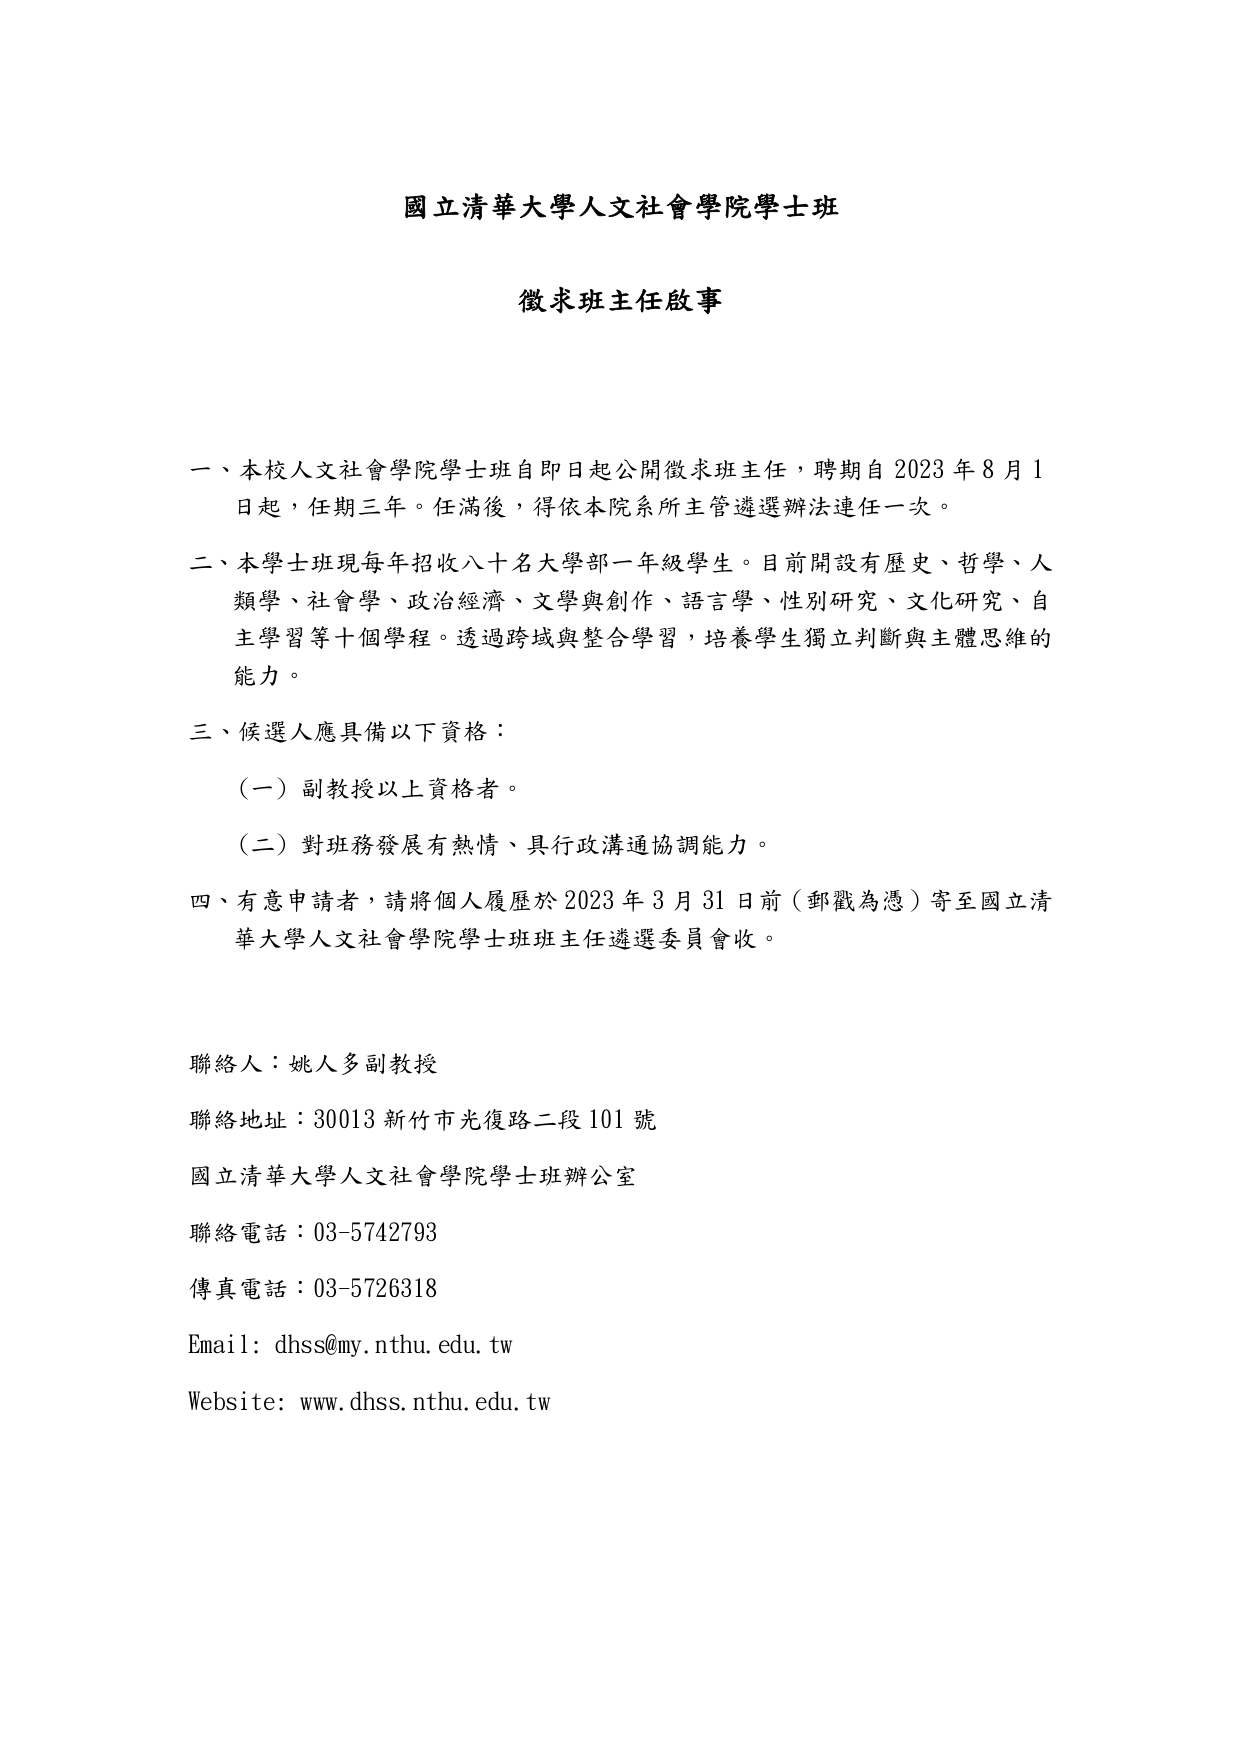 國立清華大學人文社會學院學士班徵求班主任啟事